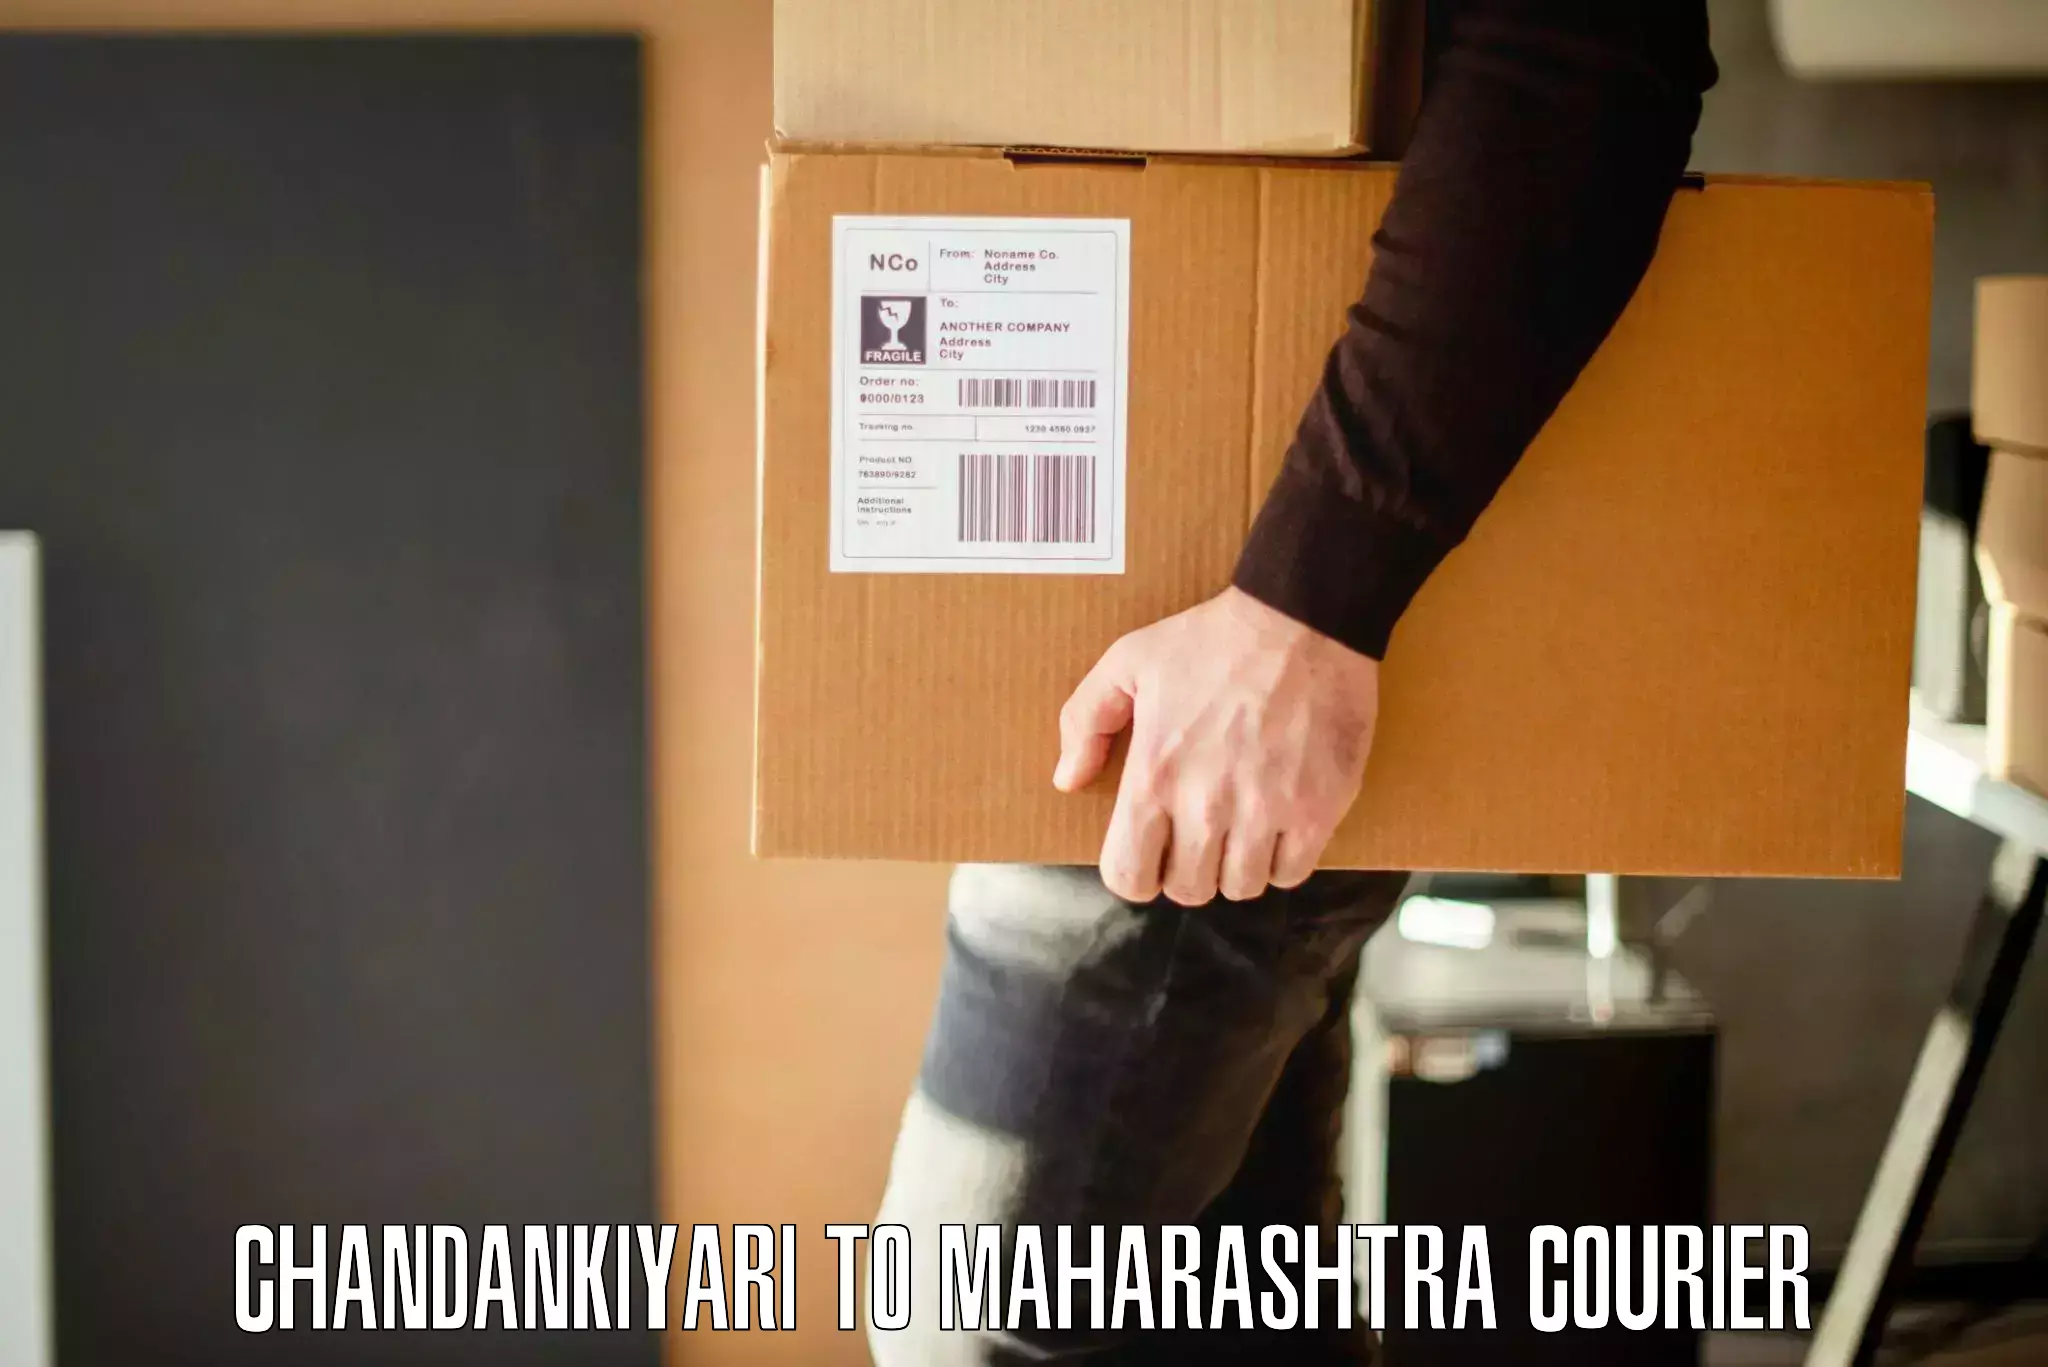 Furniture shipping services Chandankiyari to Shivajinagar